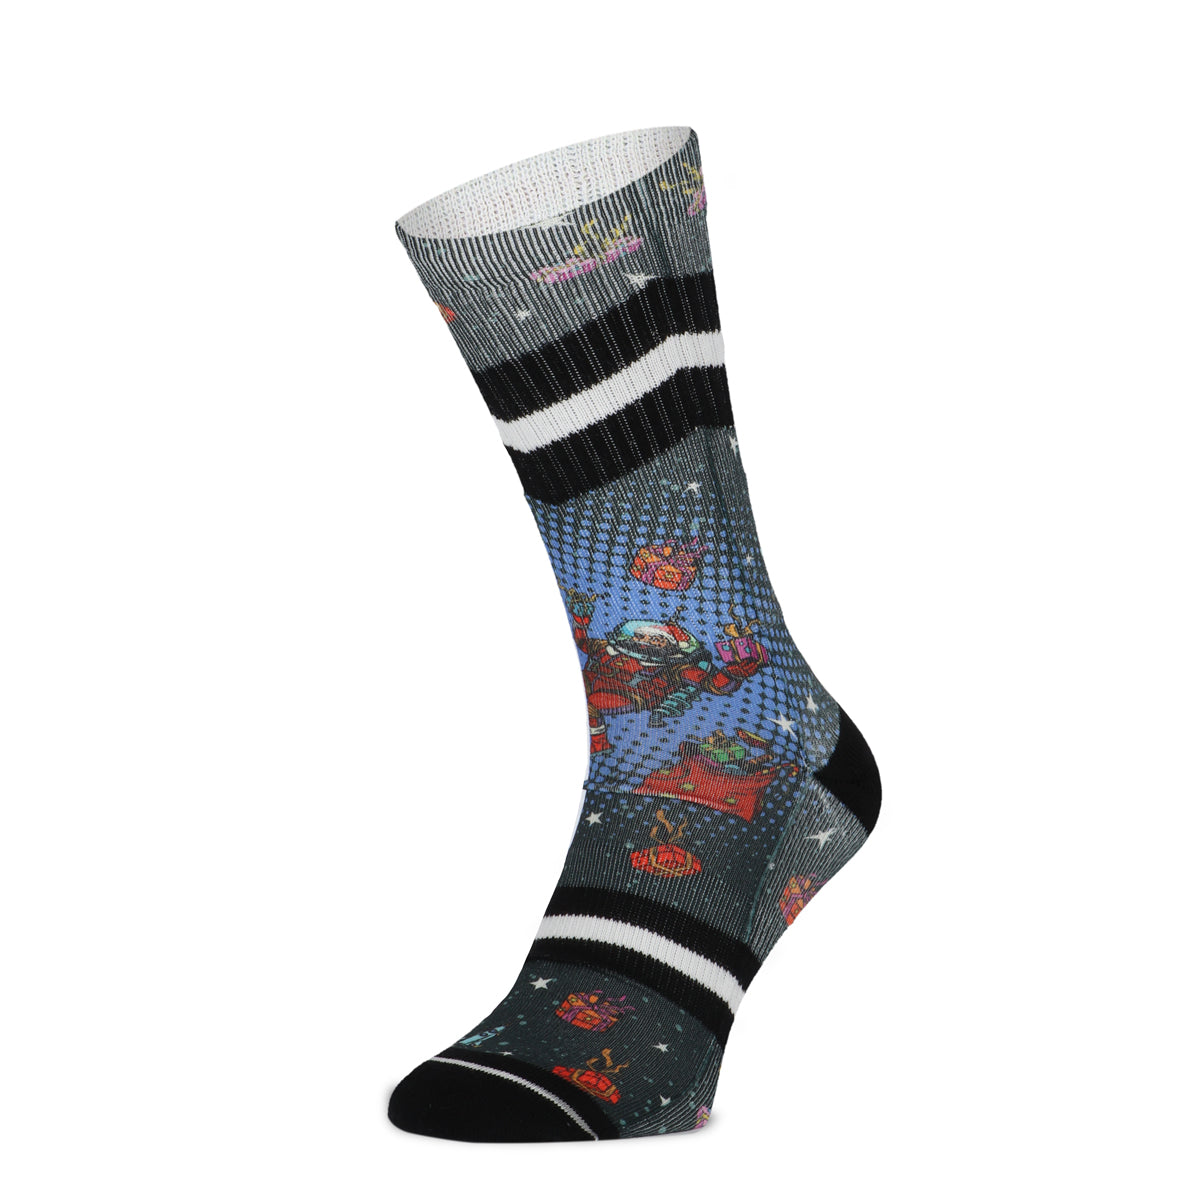 Xmas Space Present men's socks